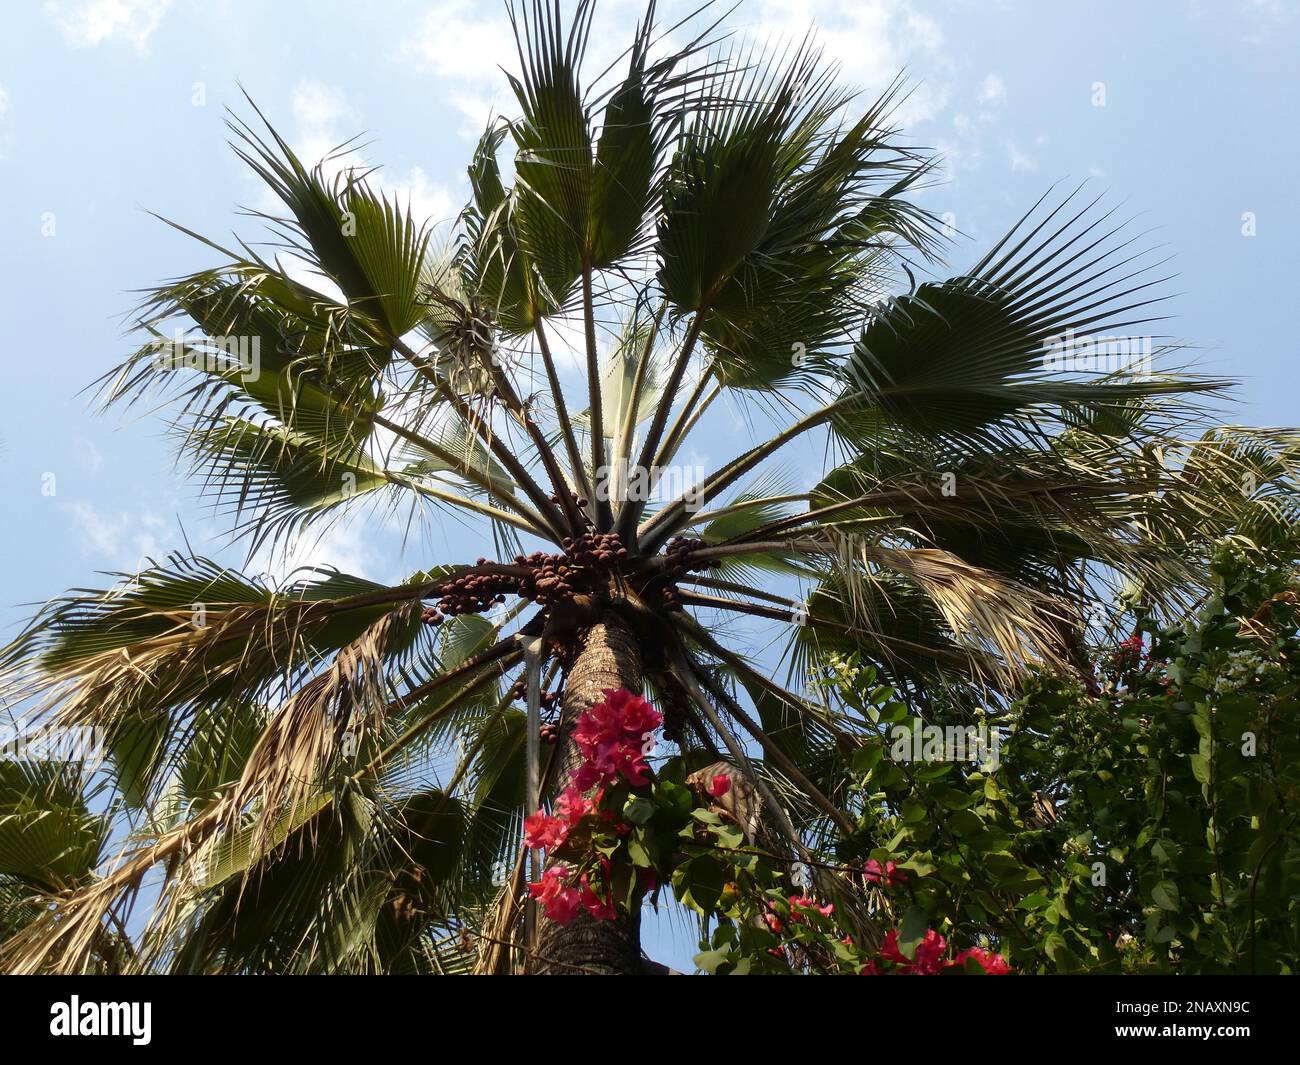 Beautiful palm tree in Botswana Stock Photo